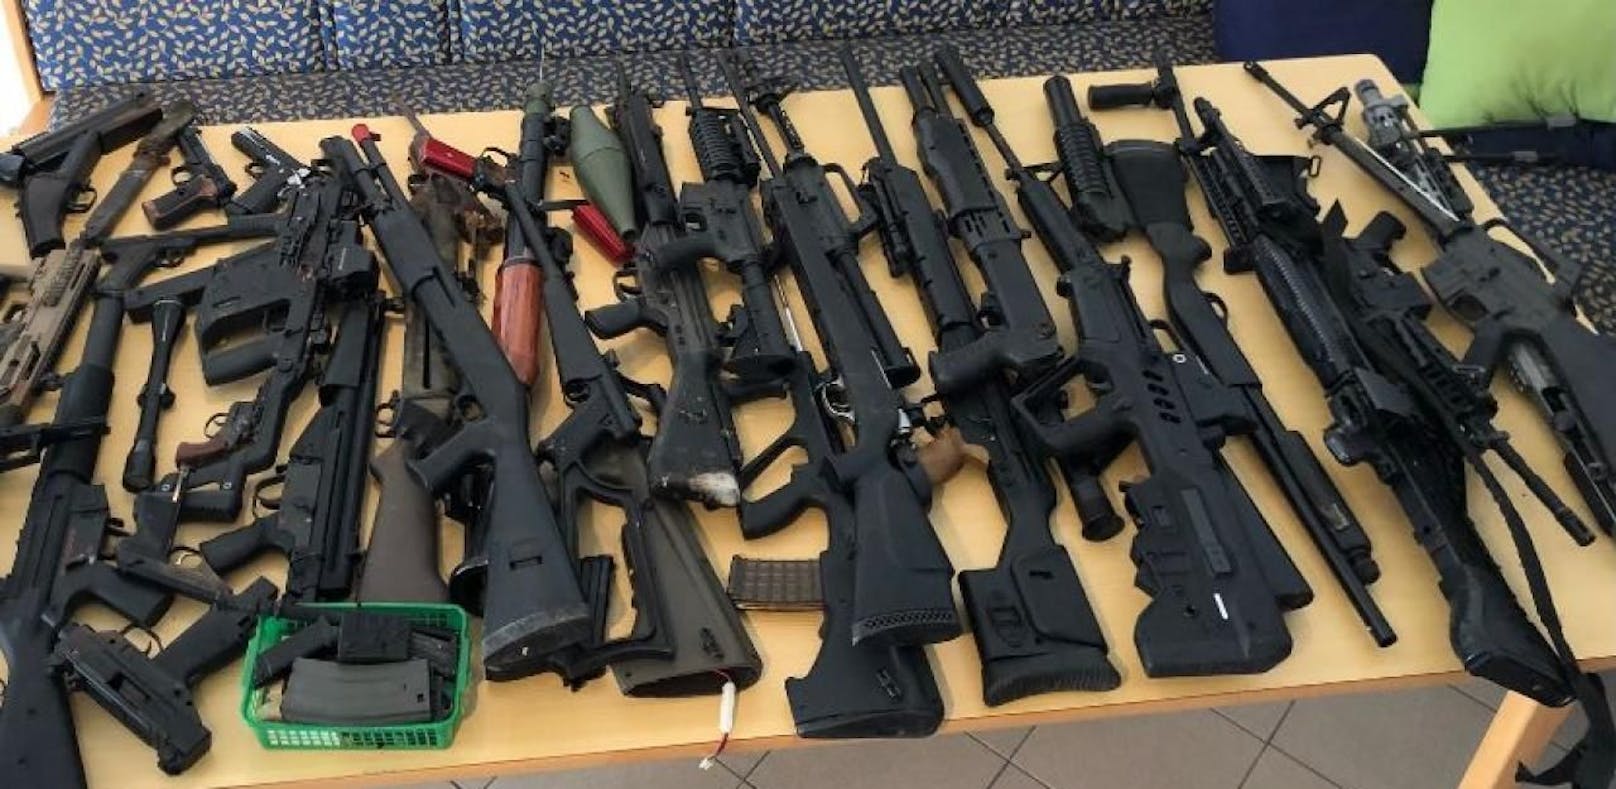 Jede Menge Schusswaffen wurden gefunden.